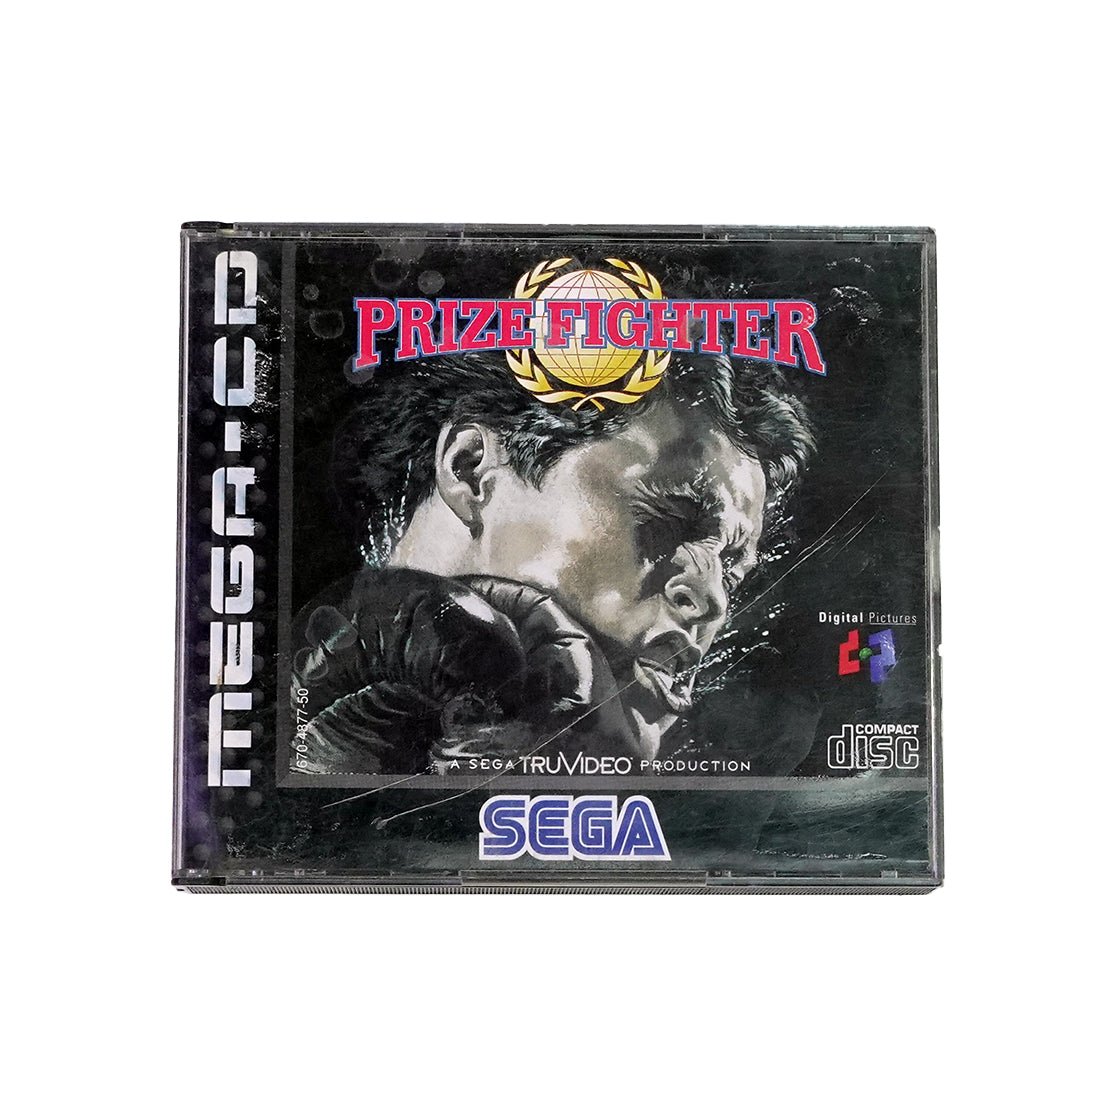 (Pre-Owned) Prize Fighter Game - Sega Mega CD - ريترو - Store 974 | ستور ٩٧٤